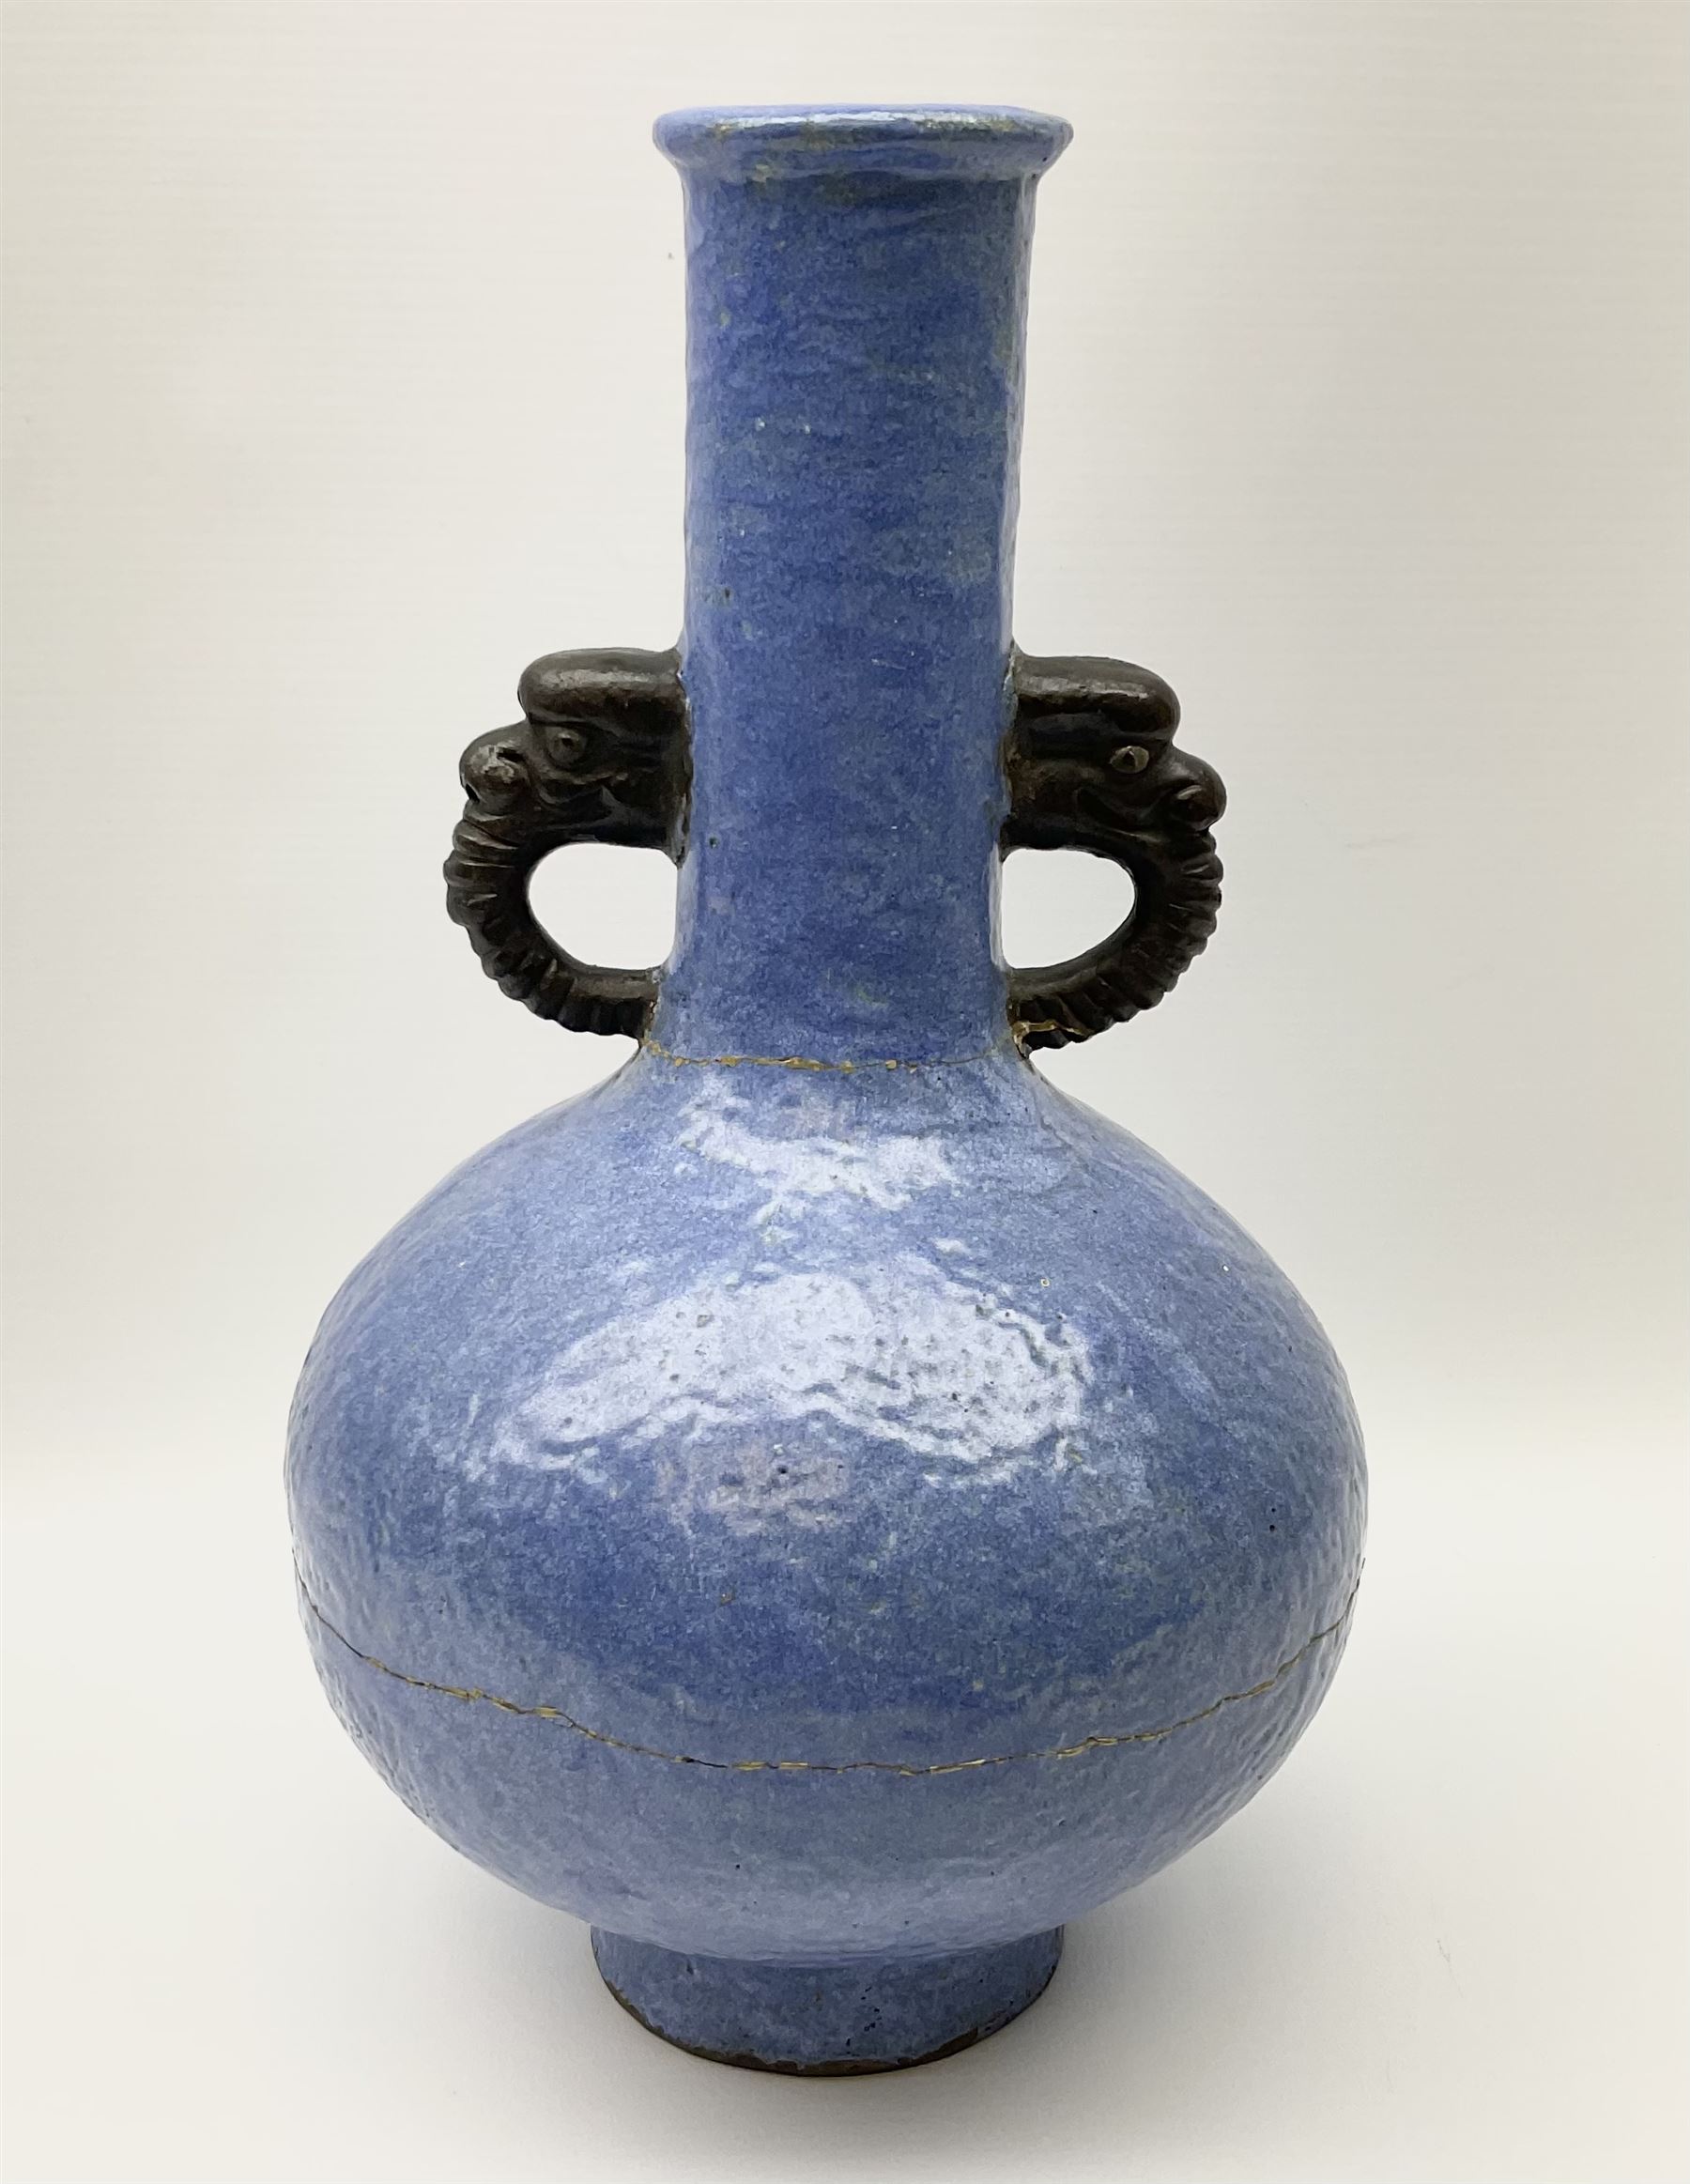 20th Century Chinese blue glazed twin handled vase with orange peel finish